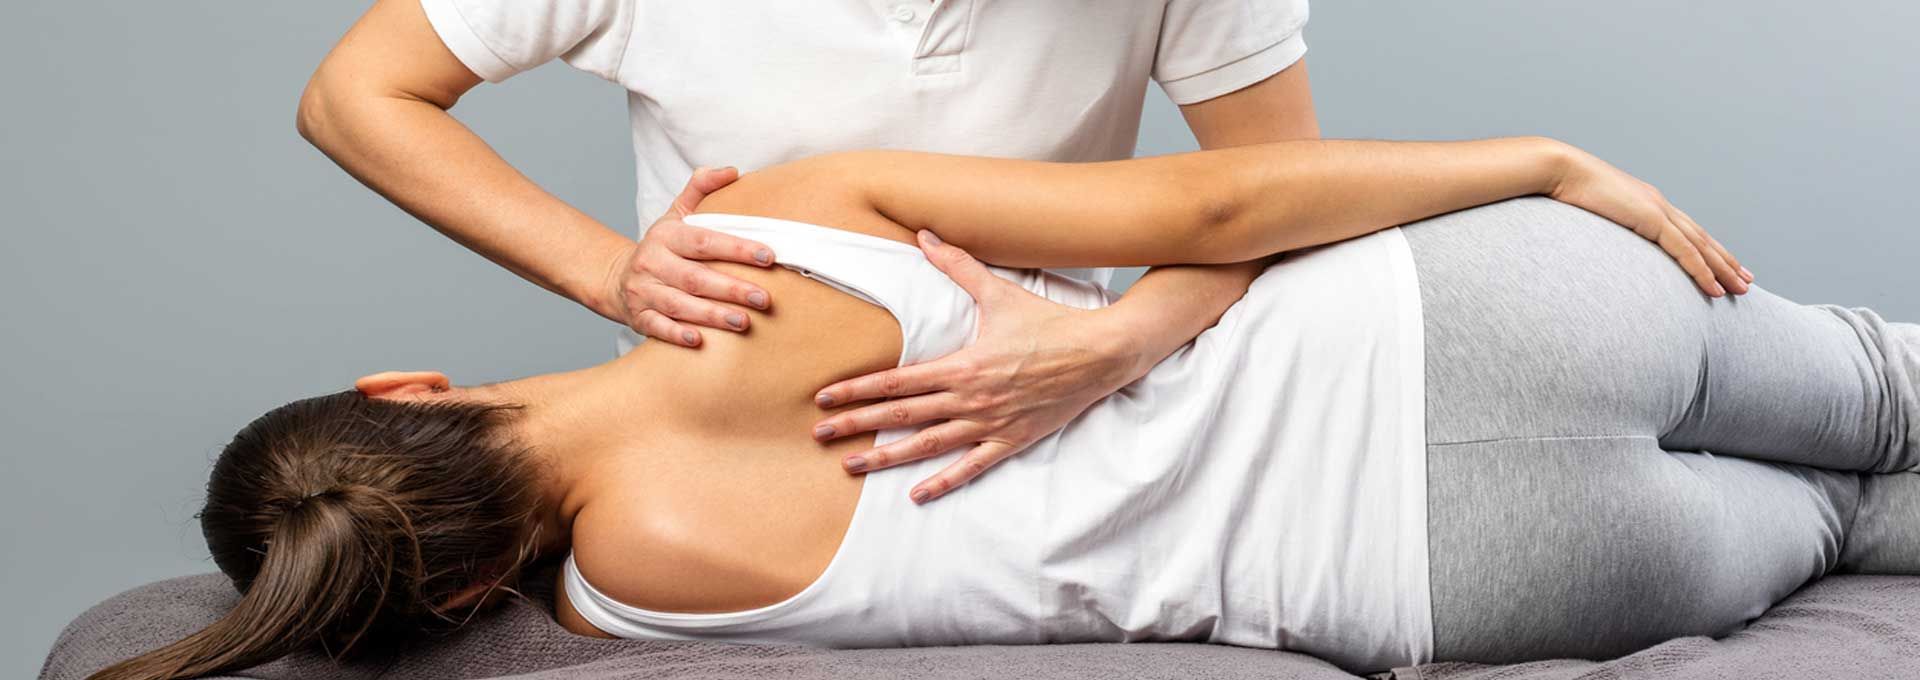 Fisioterapia e massaggi